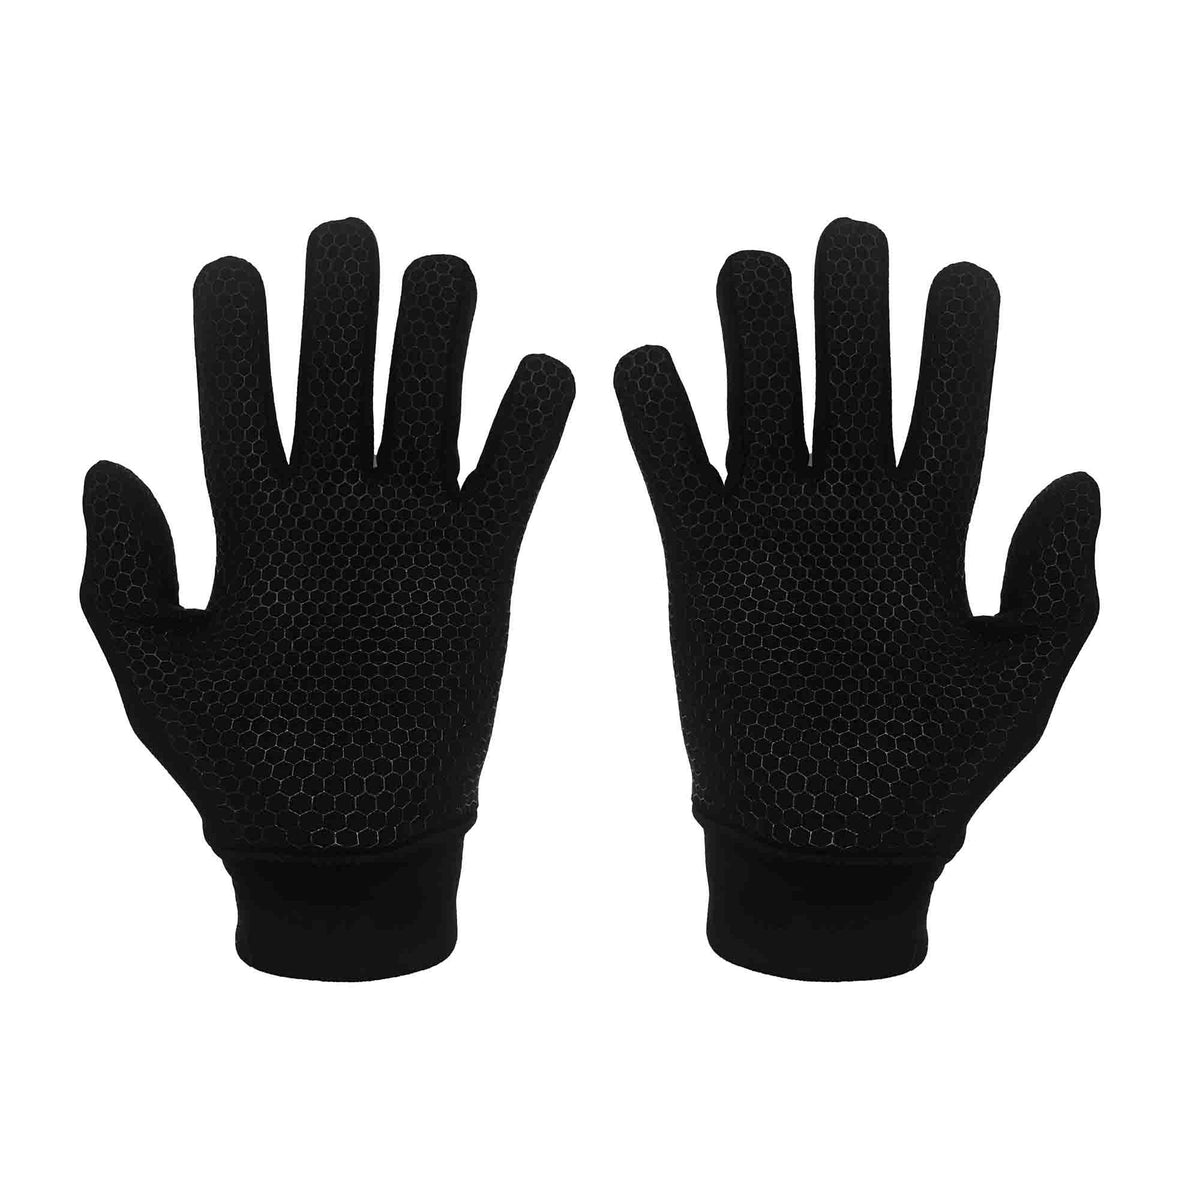 W100 Winter Gloves